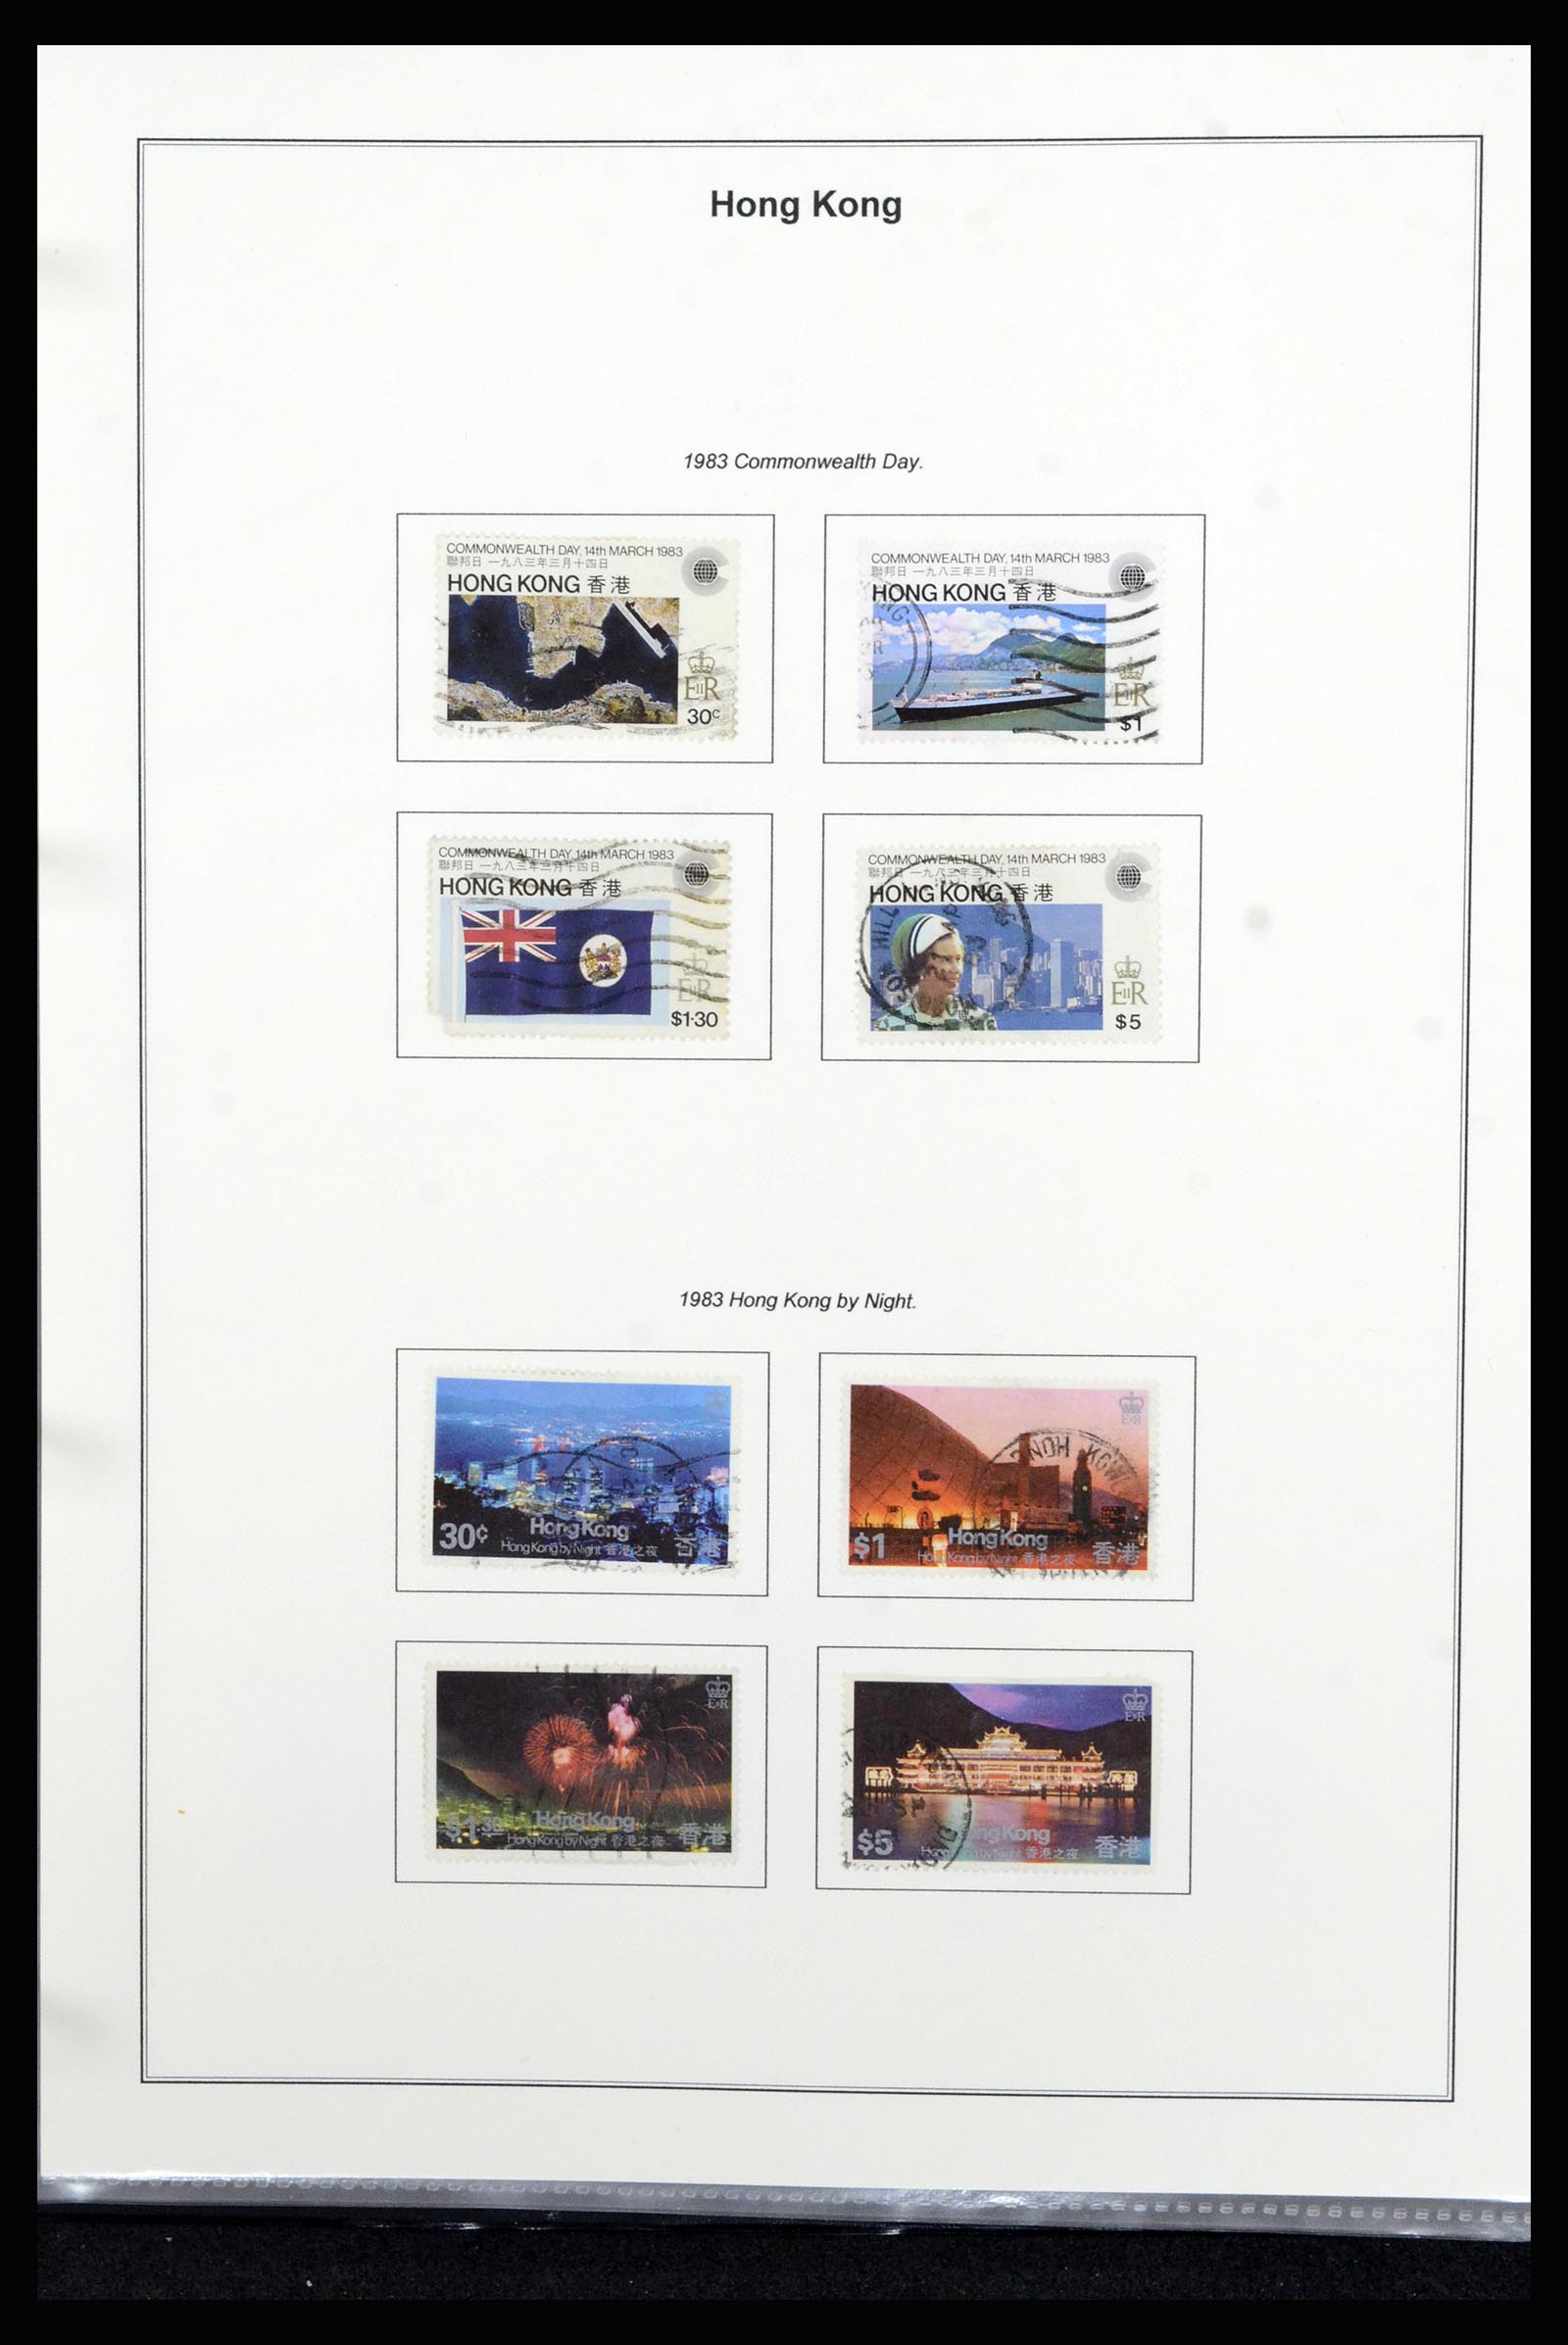 37079 046 - Stamp collection 37079 Hong Kong 1961-1984.